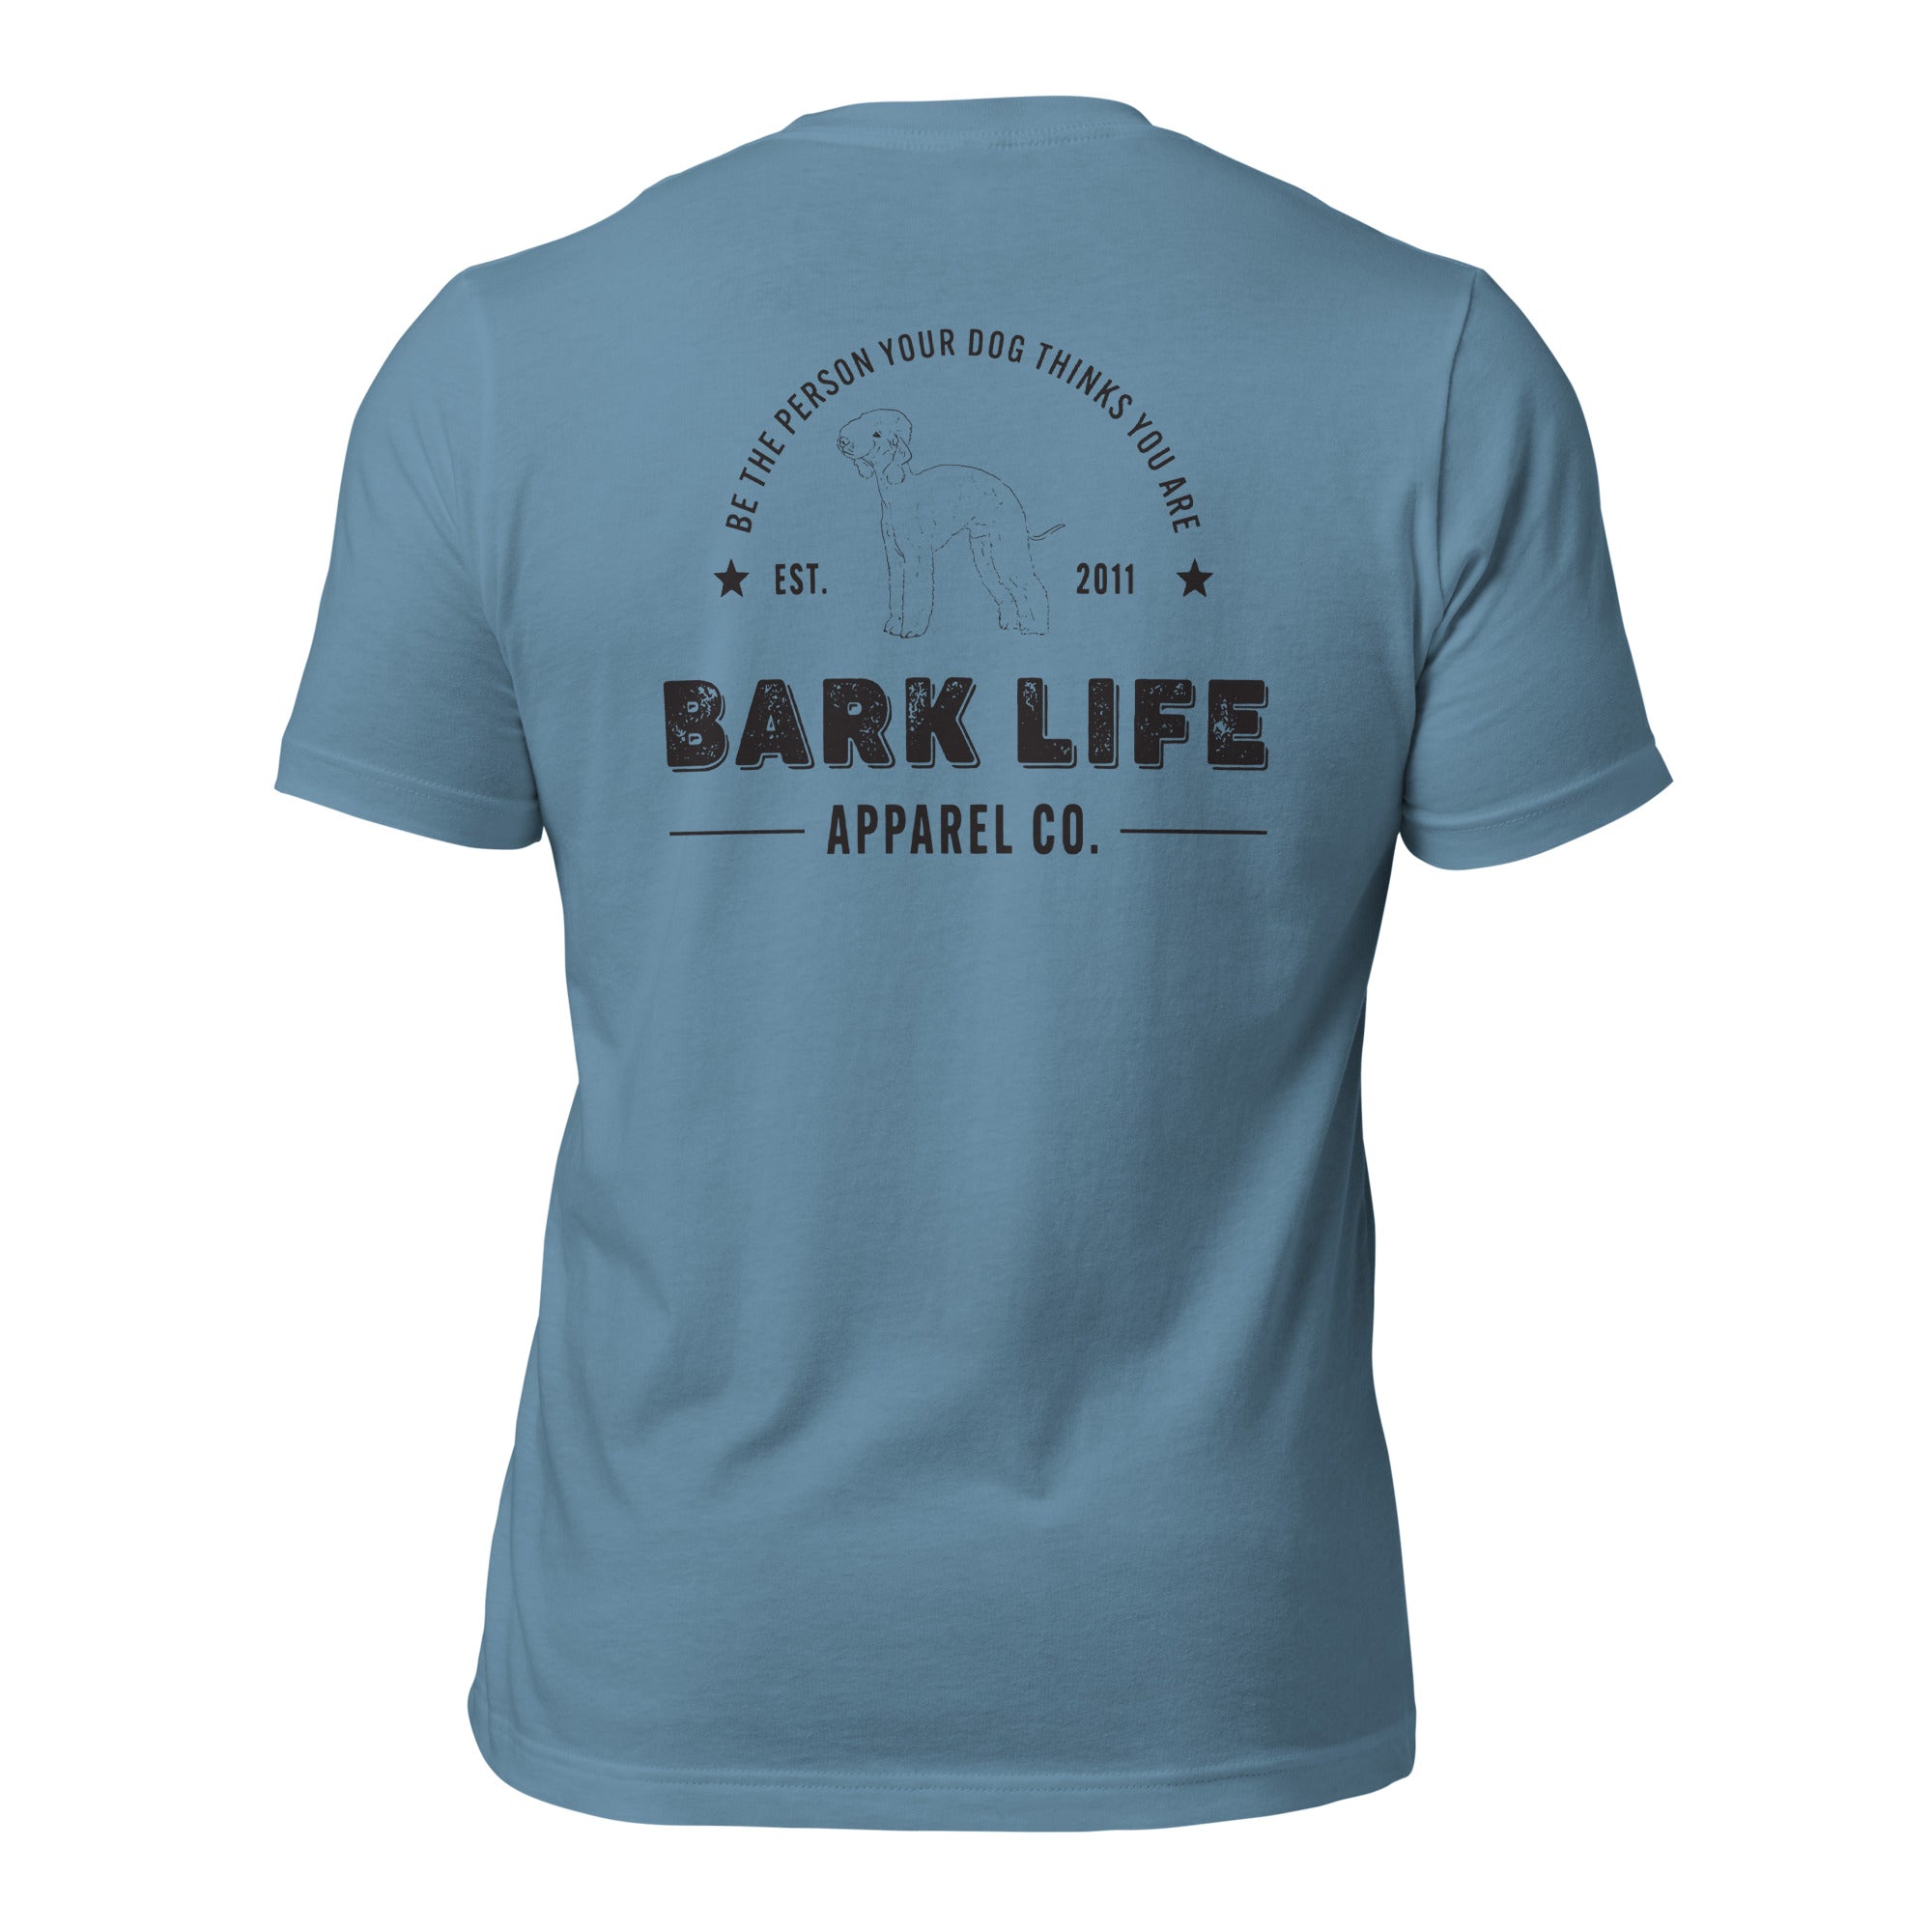 Bedlington Terrier - Short Sleeve Cotton Tee  Shirt